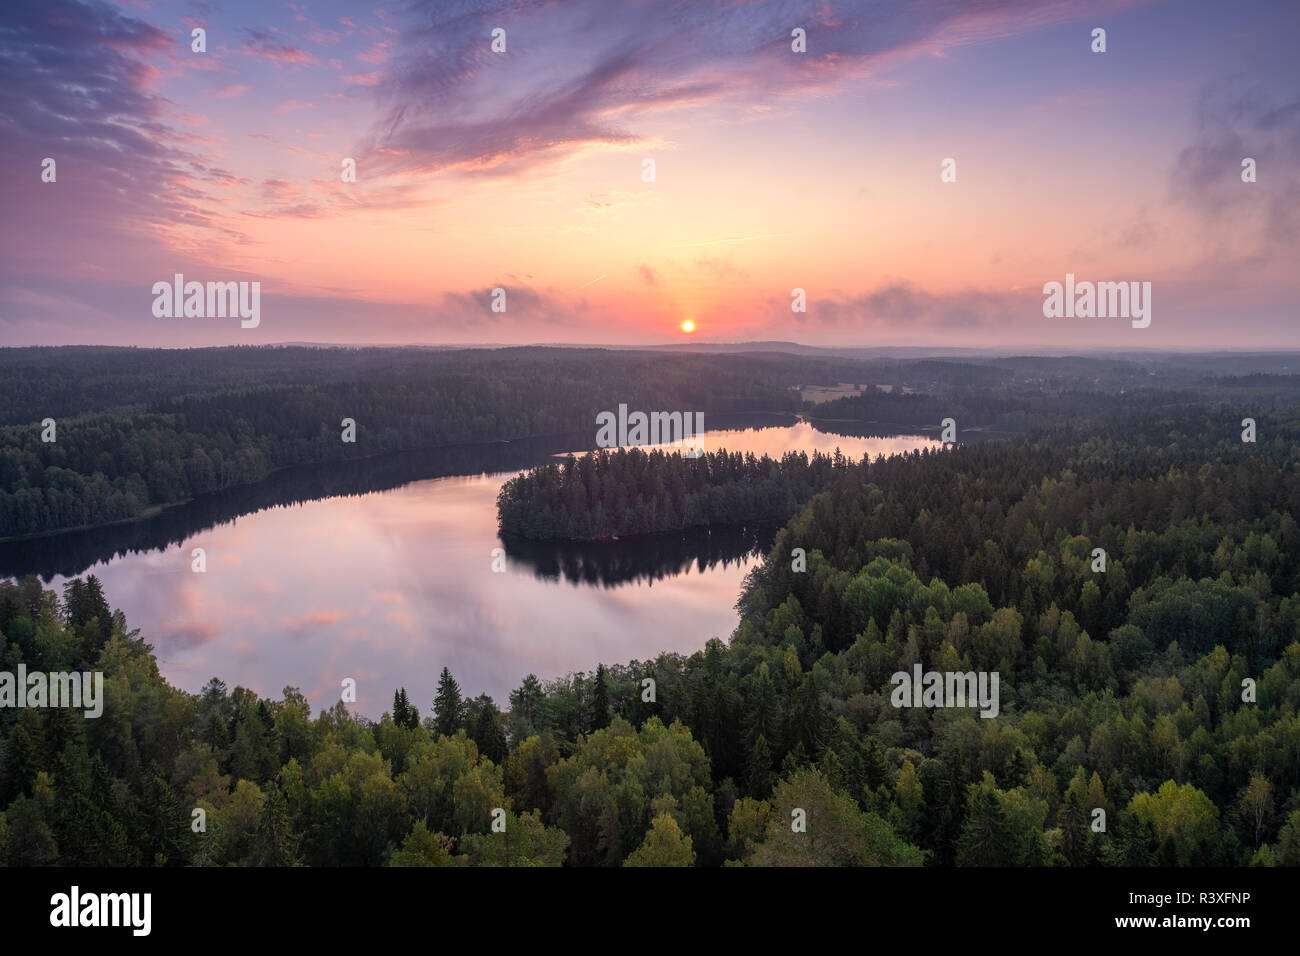 Paysage panoramique angle élevé avec sunrise, forêt et lac au matin d'automne dans la réserve naturelle, la Finlande Banque D'Images